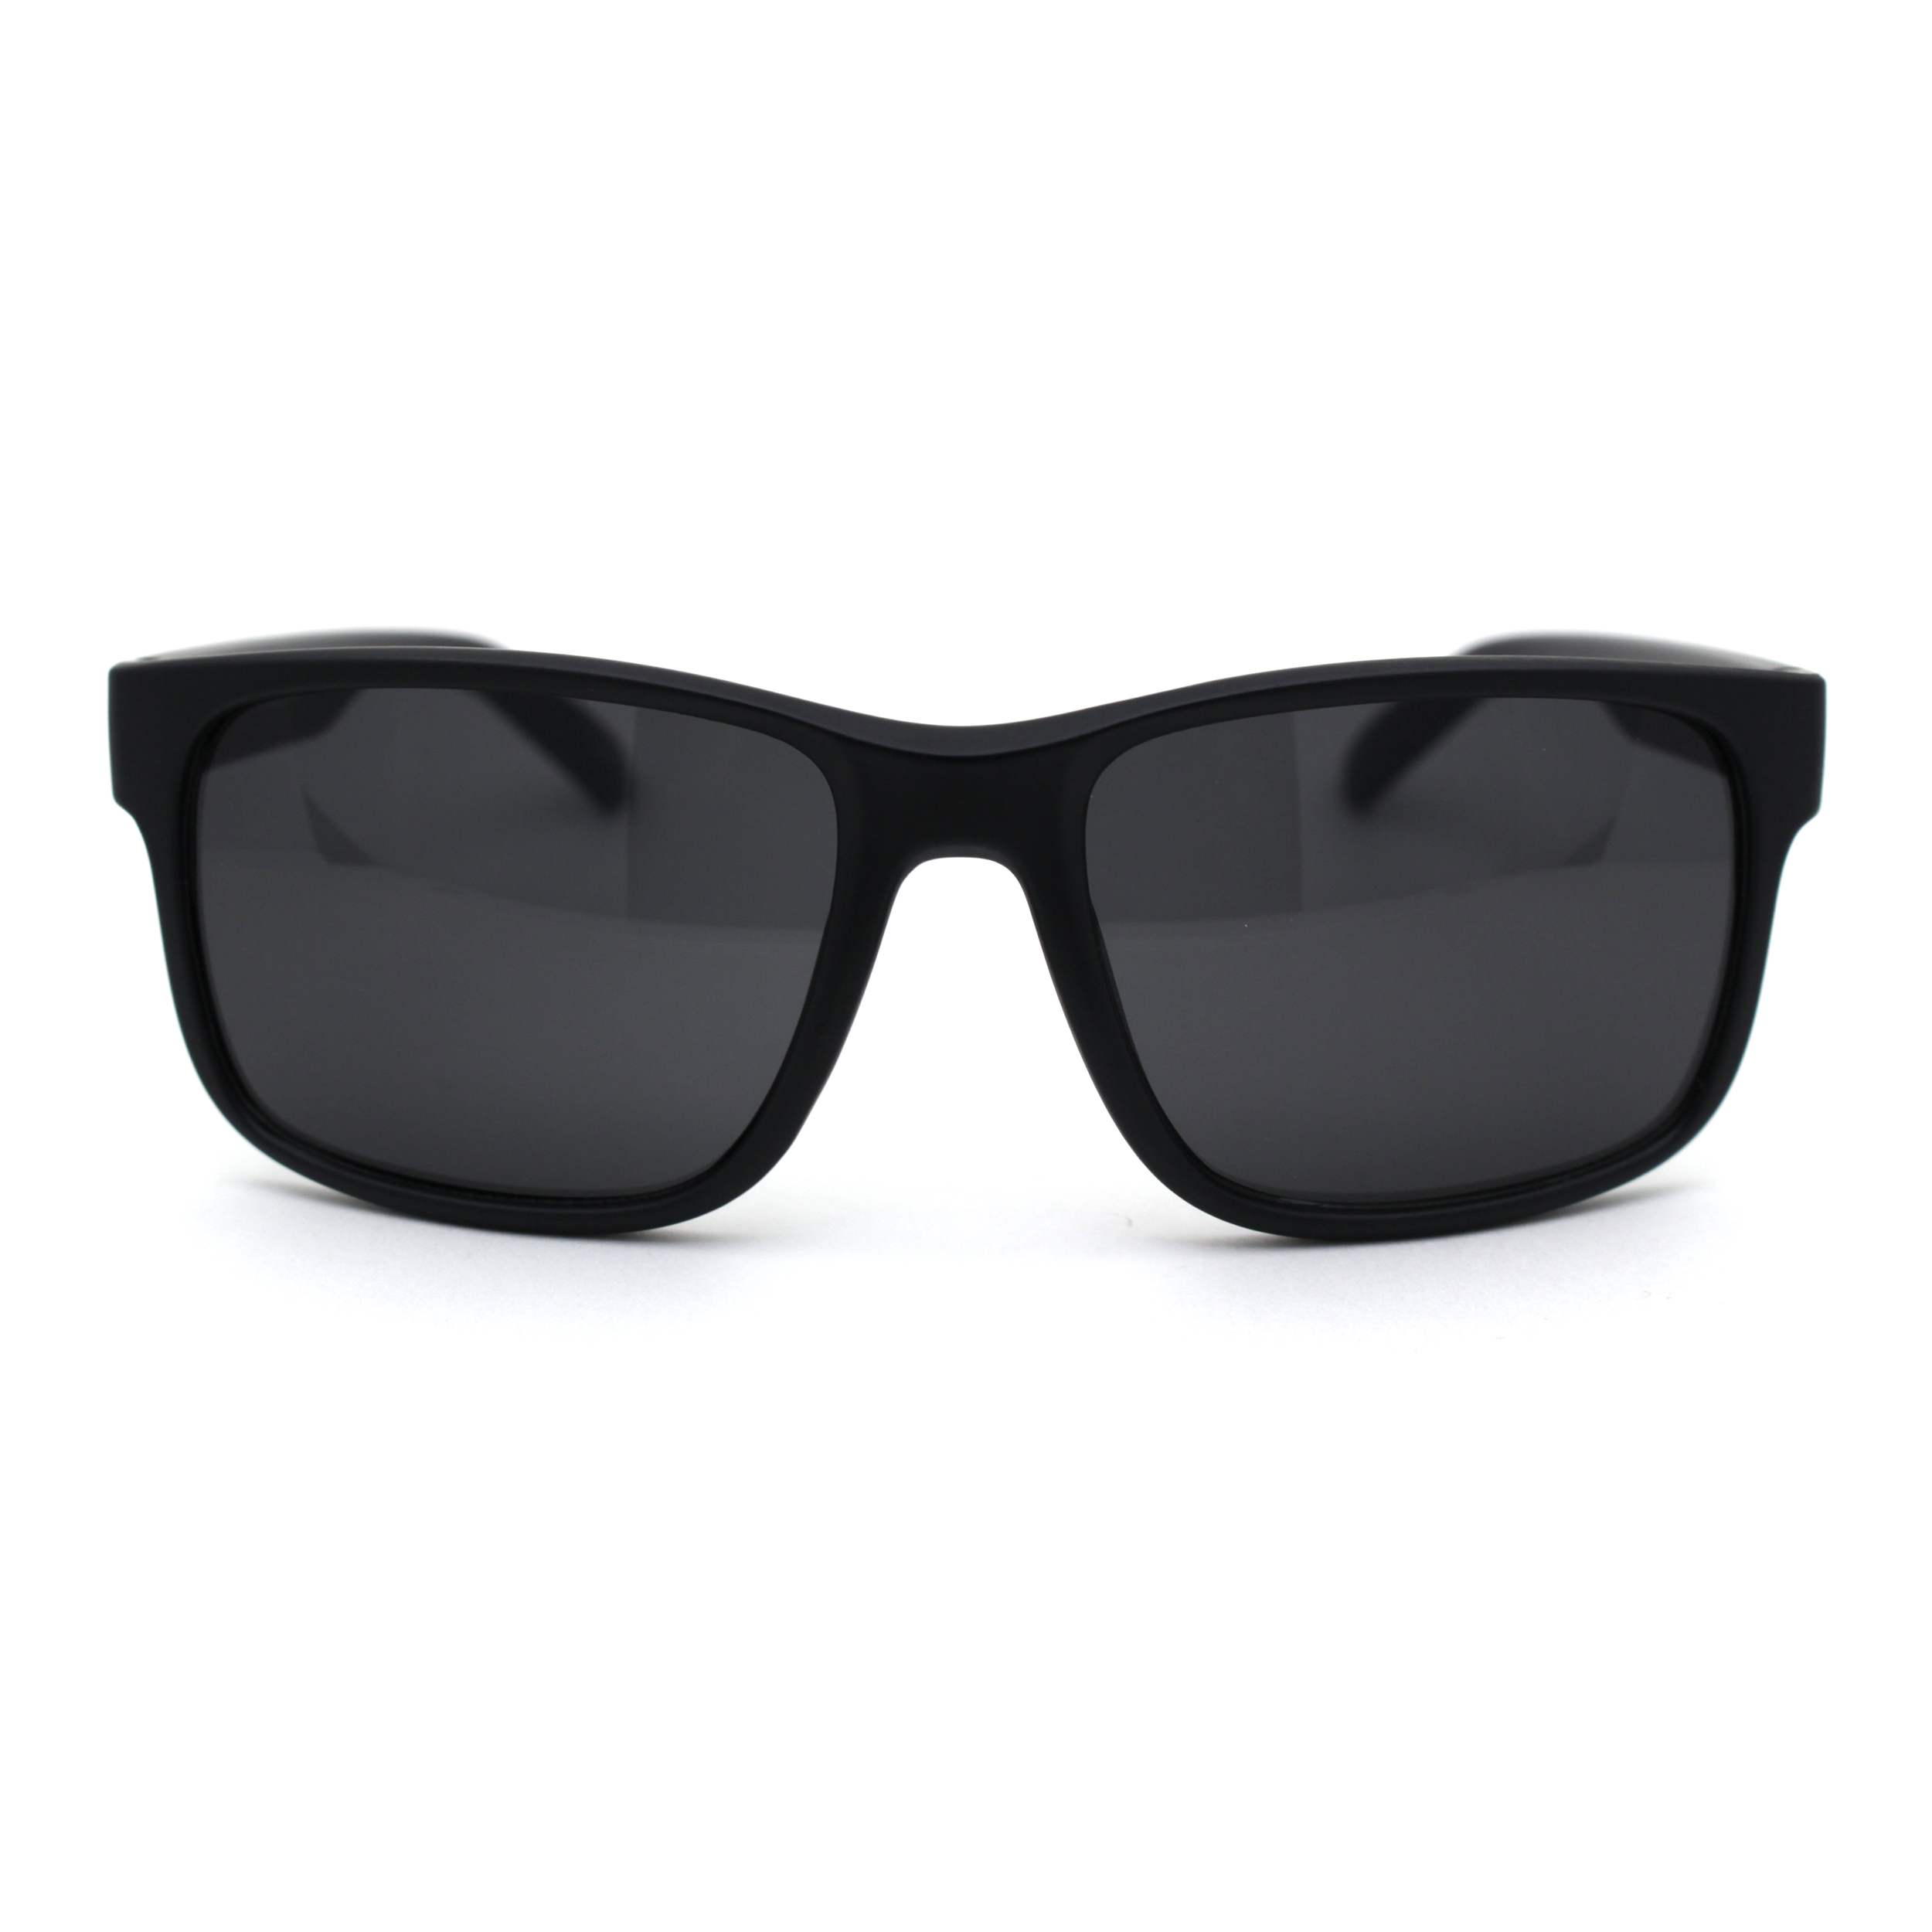 Kush Mens Black Lens Sport Horn Rim Sunglasses Matte Black Blue Black - image 2 of 4